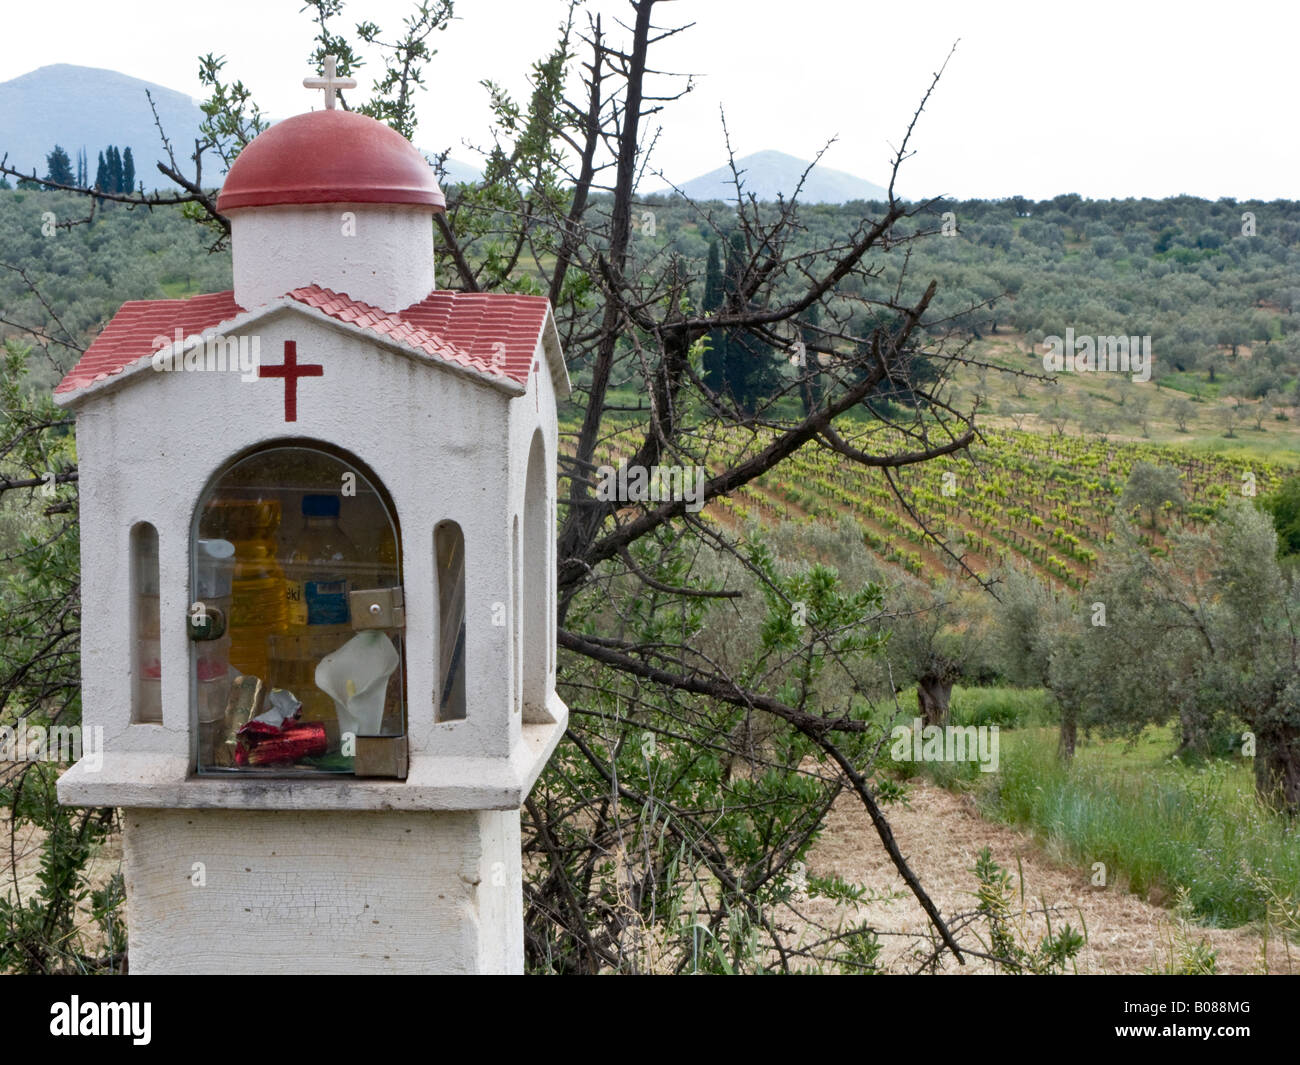 Santuario sul ciglio della strada, vicino a Corinto, Grecia, accanto a vigneto Foto Stock